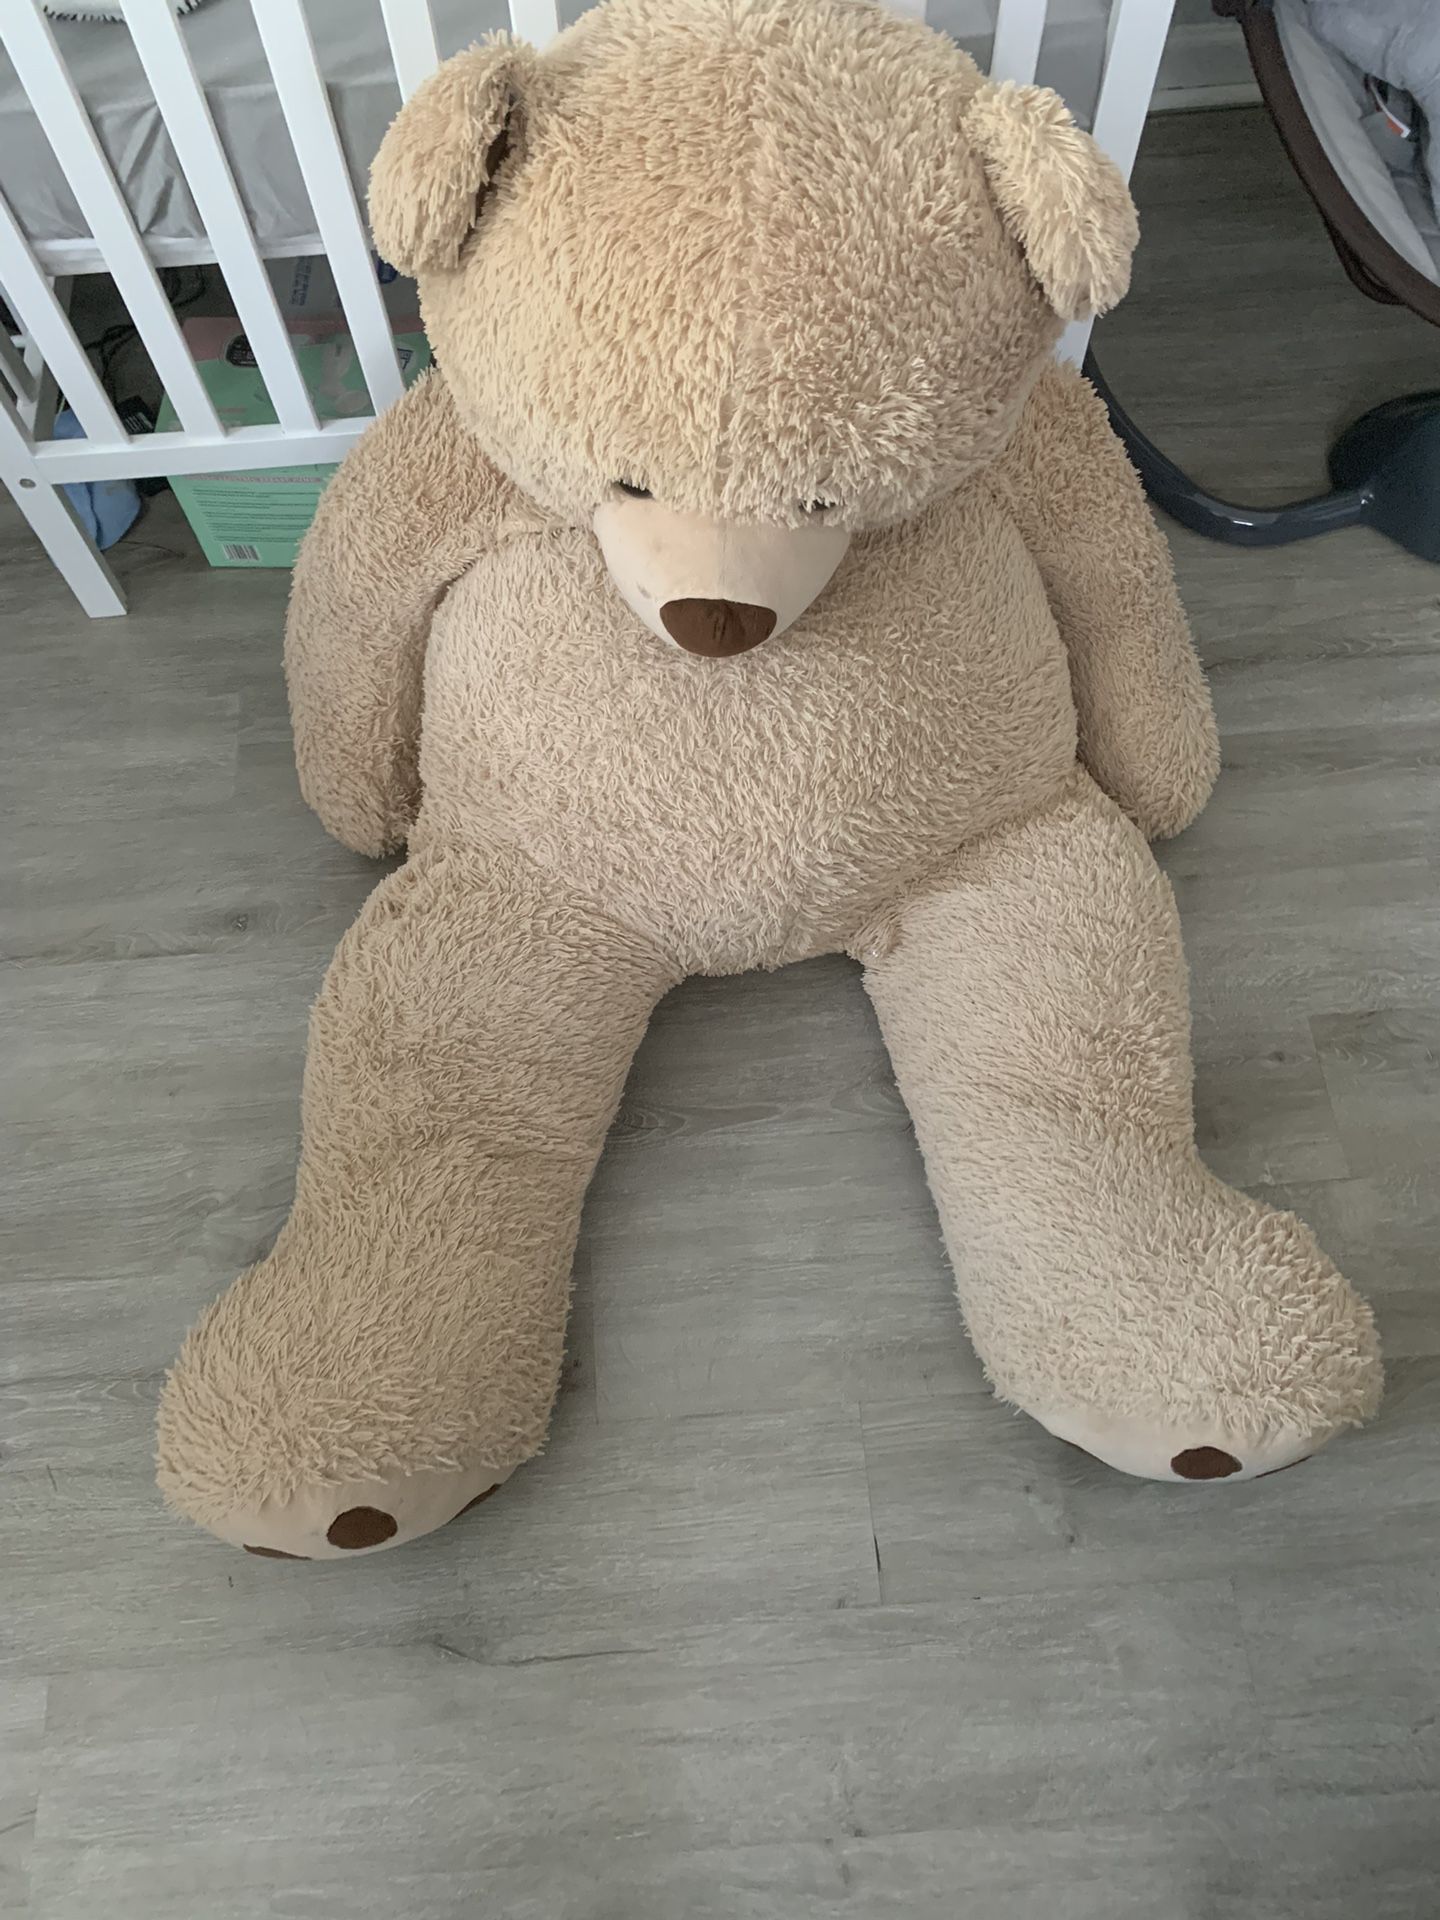 Giant teddy bear 